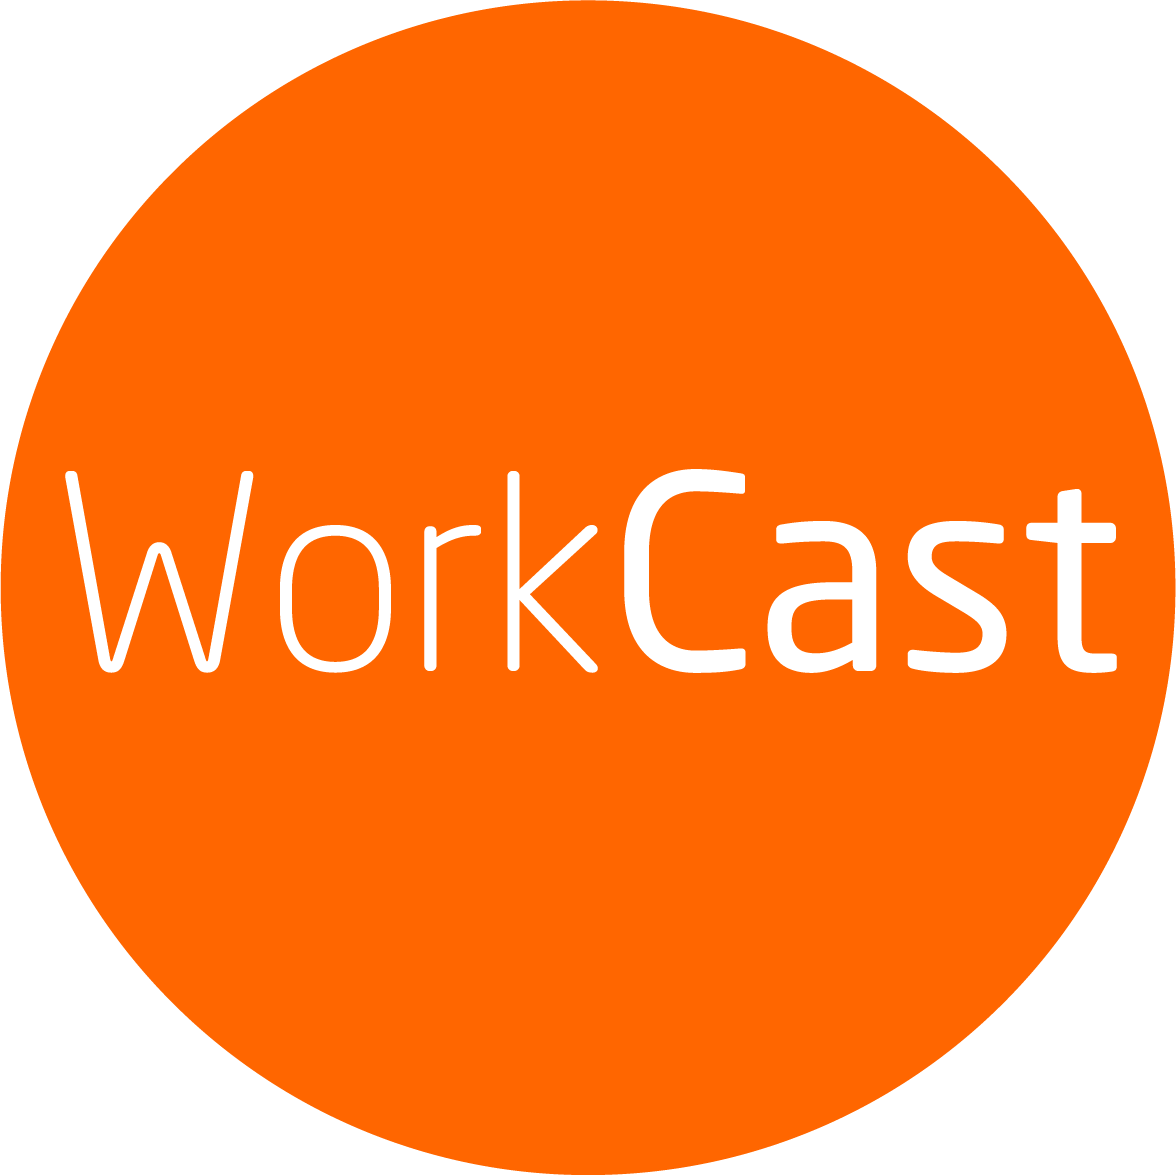 workcast-logo-1200x1200